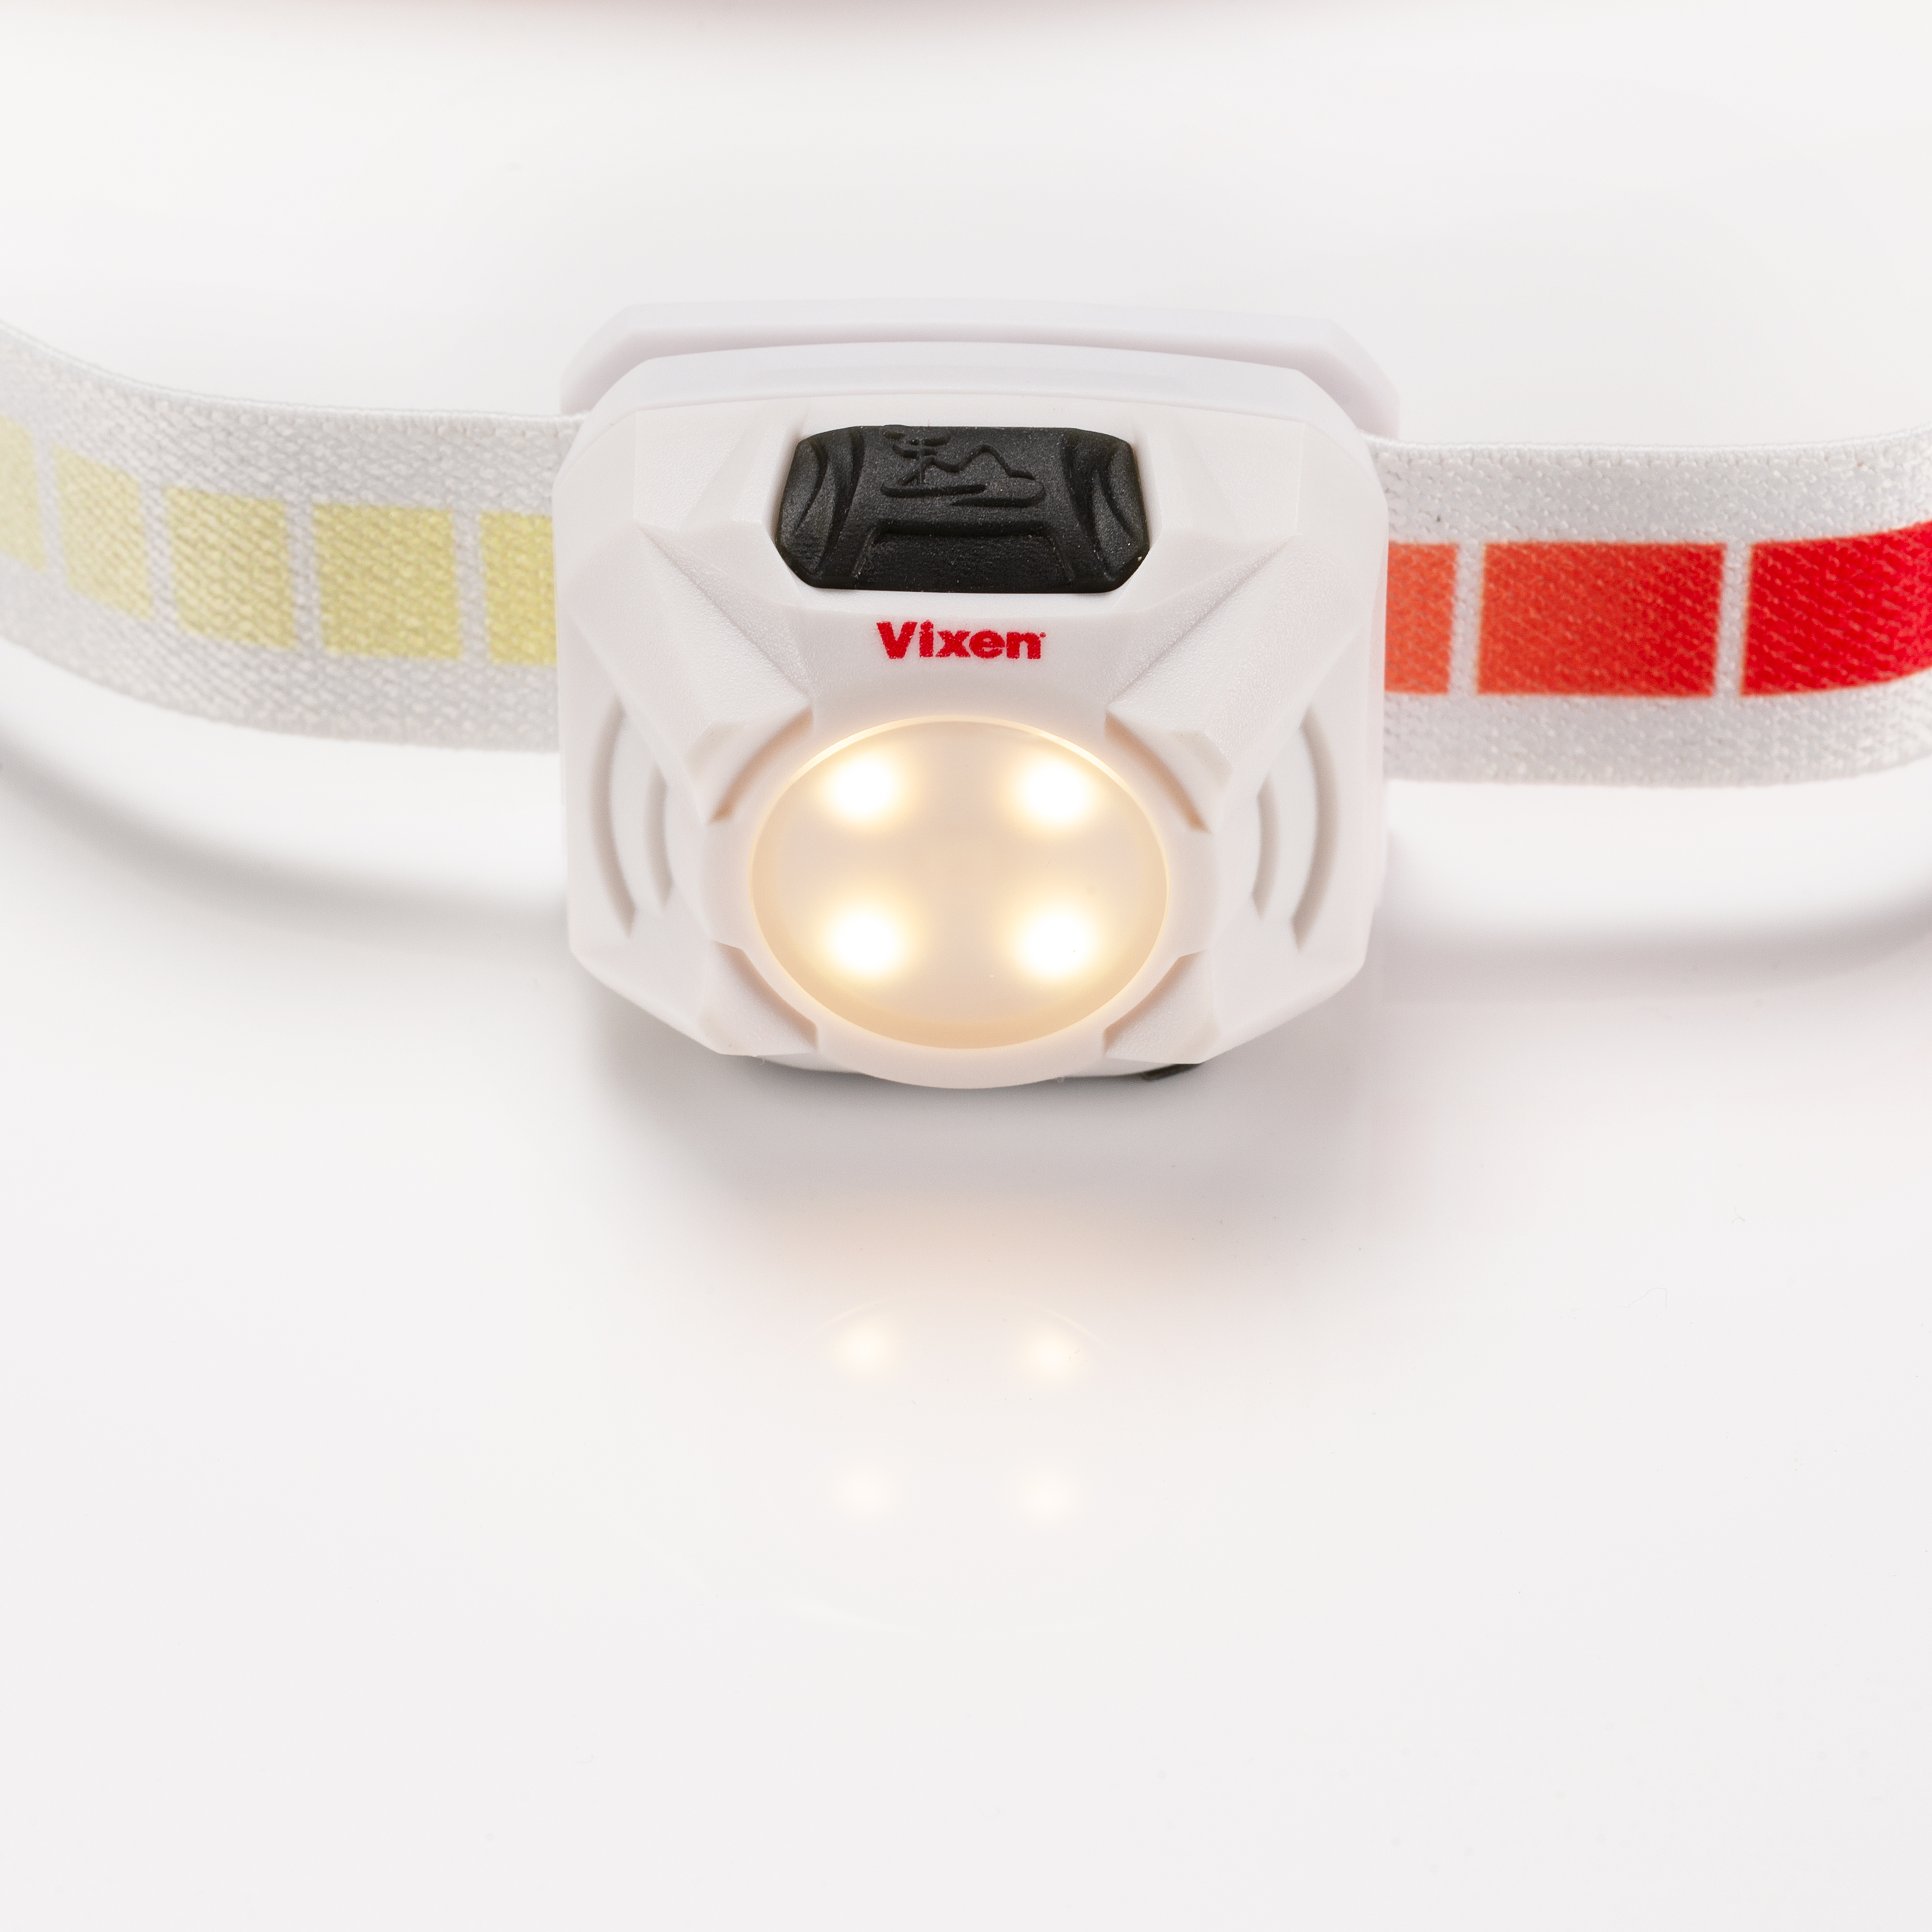 Vixen SG-L02 lampe frontale lumière rouge - blanche